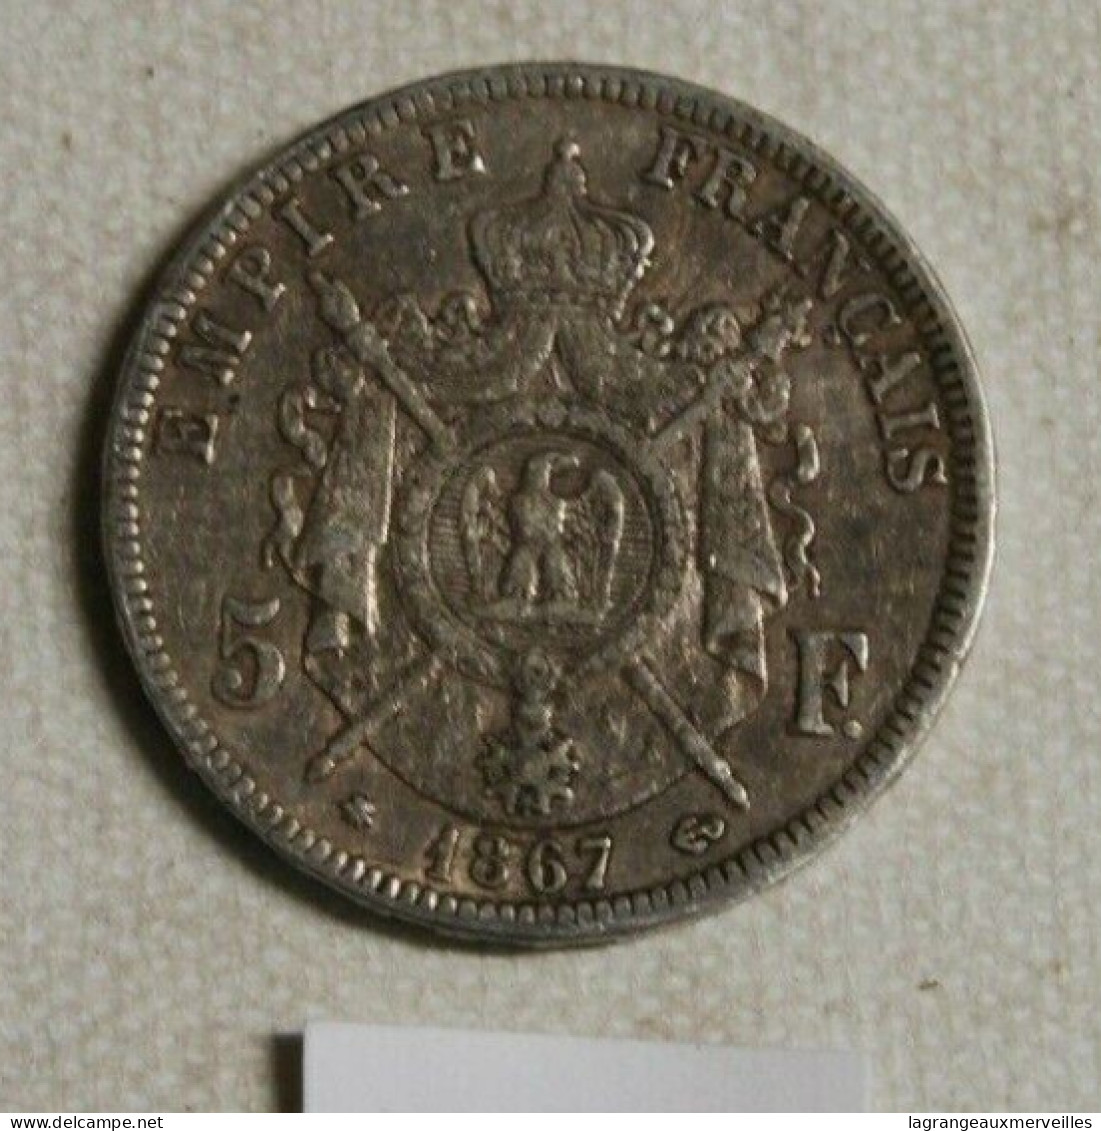 C211 Monnaie - France - 5 Frs - 1867 - Empire Français - Paris - 5 Francs